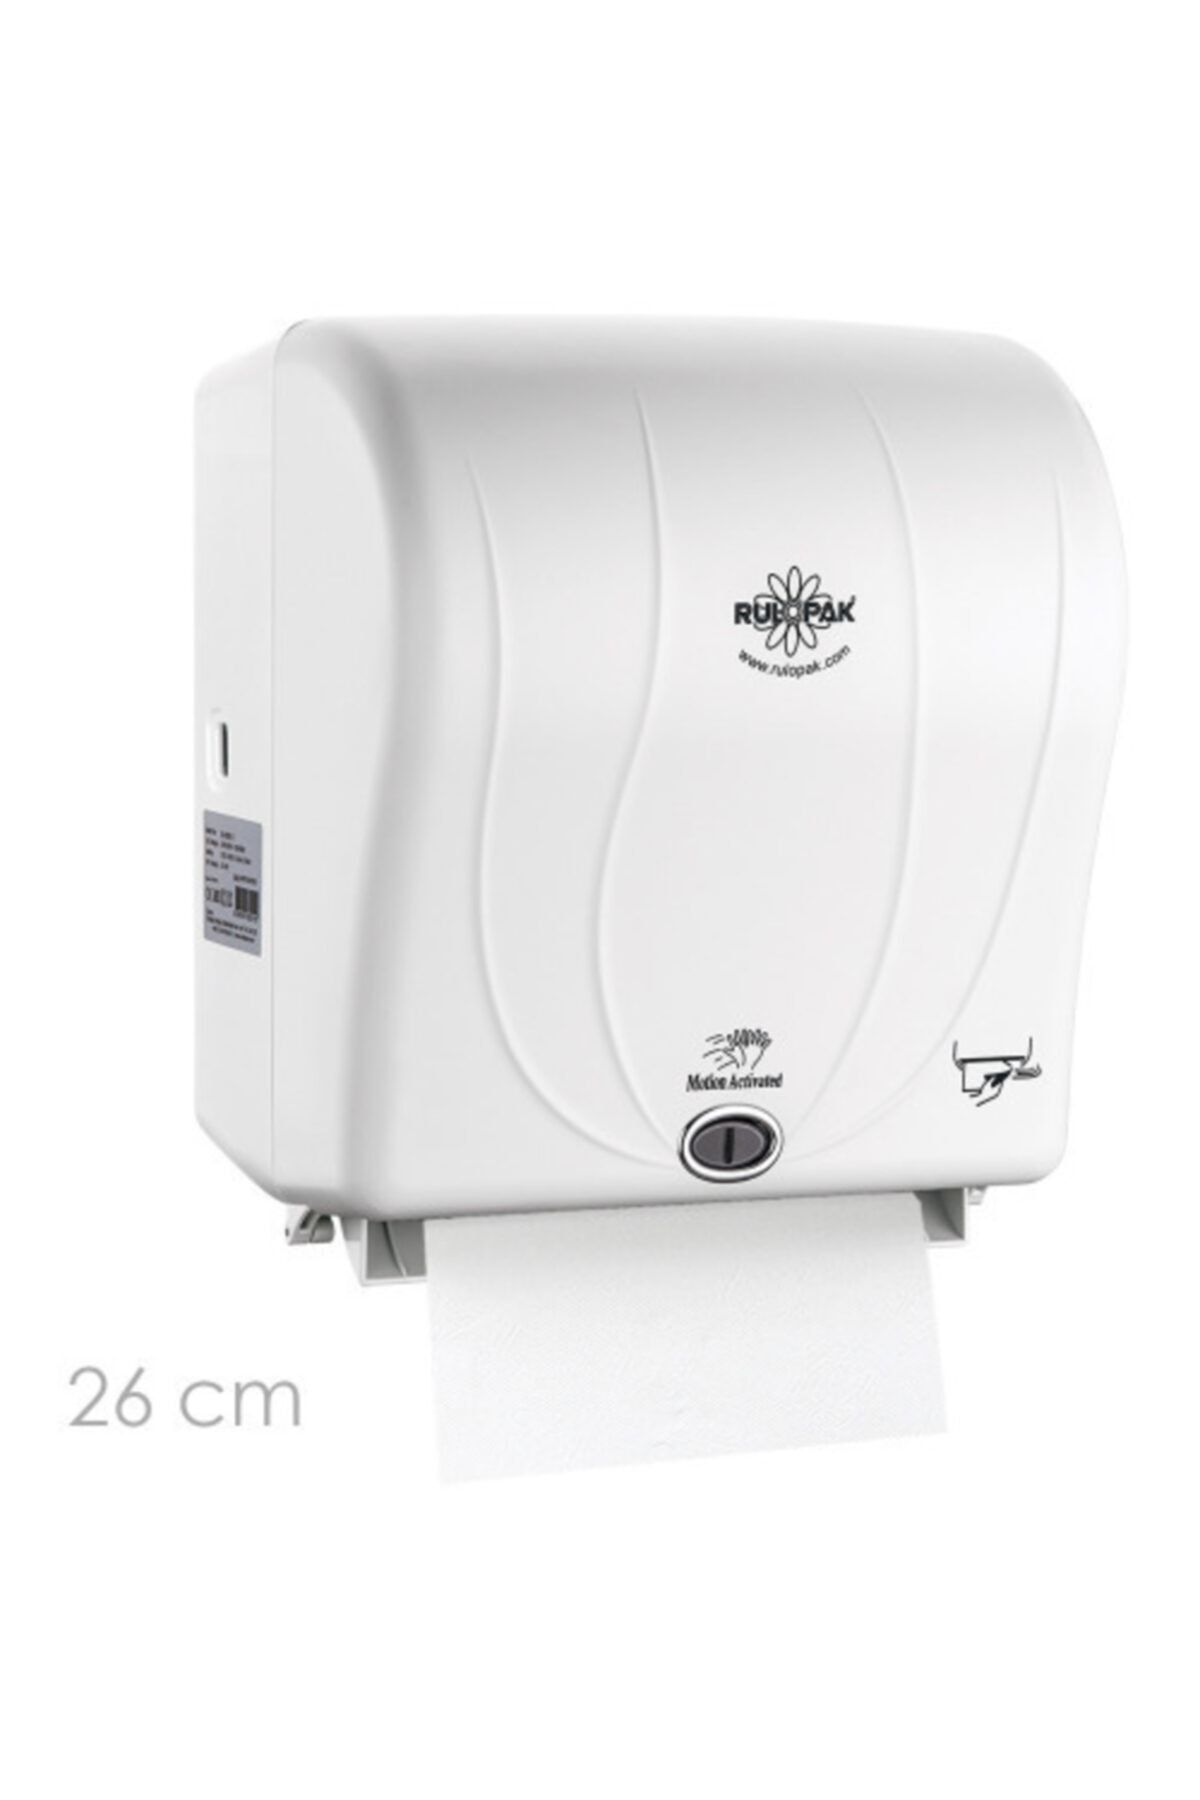 Rulopak Sensörlü Havlu Makinesi 26 Cm Beyaz